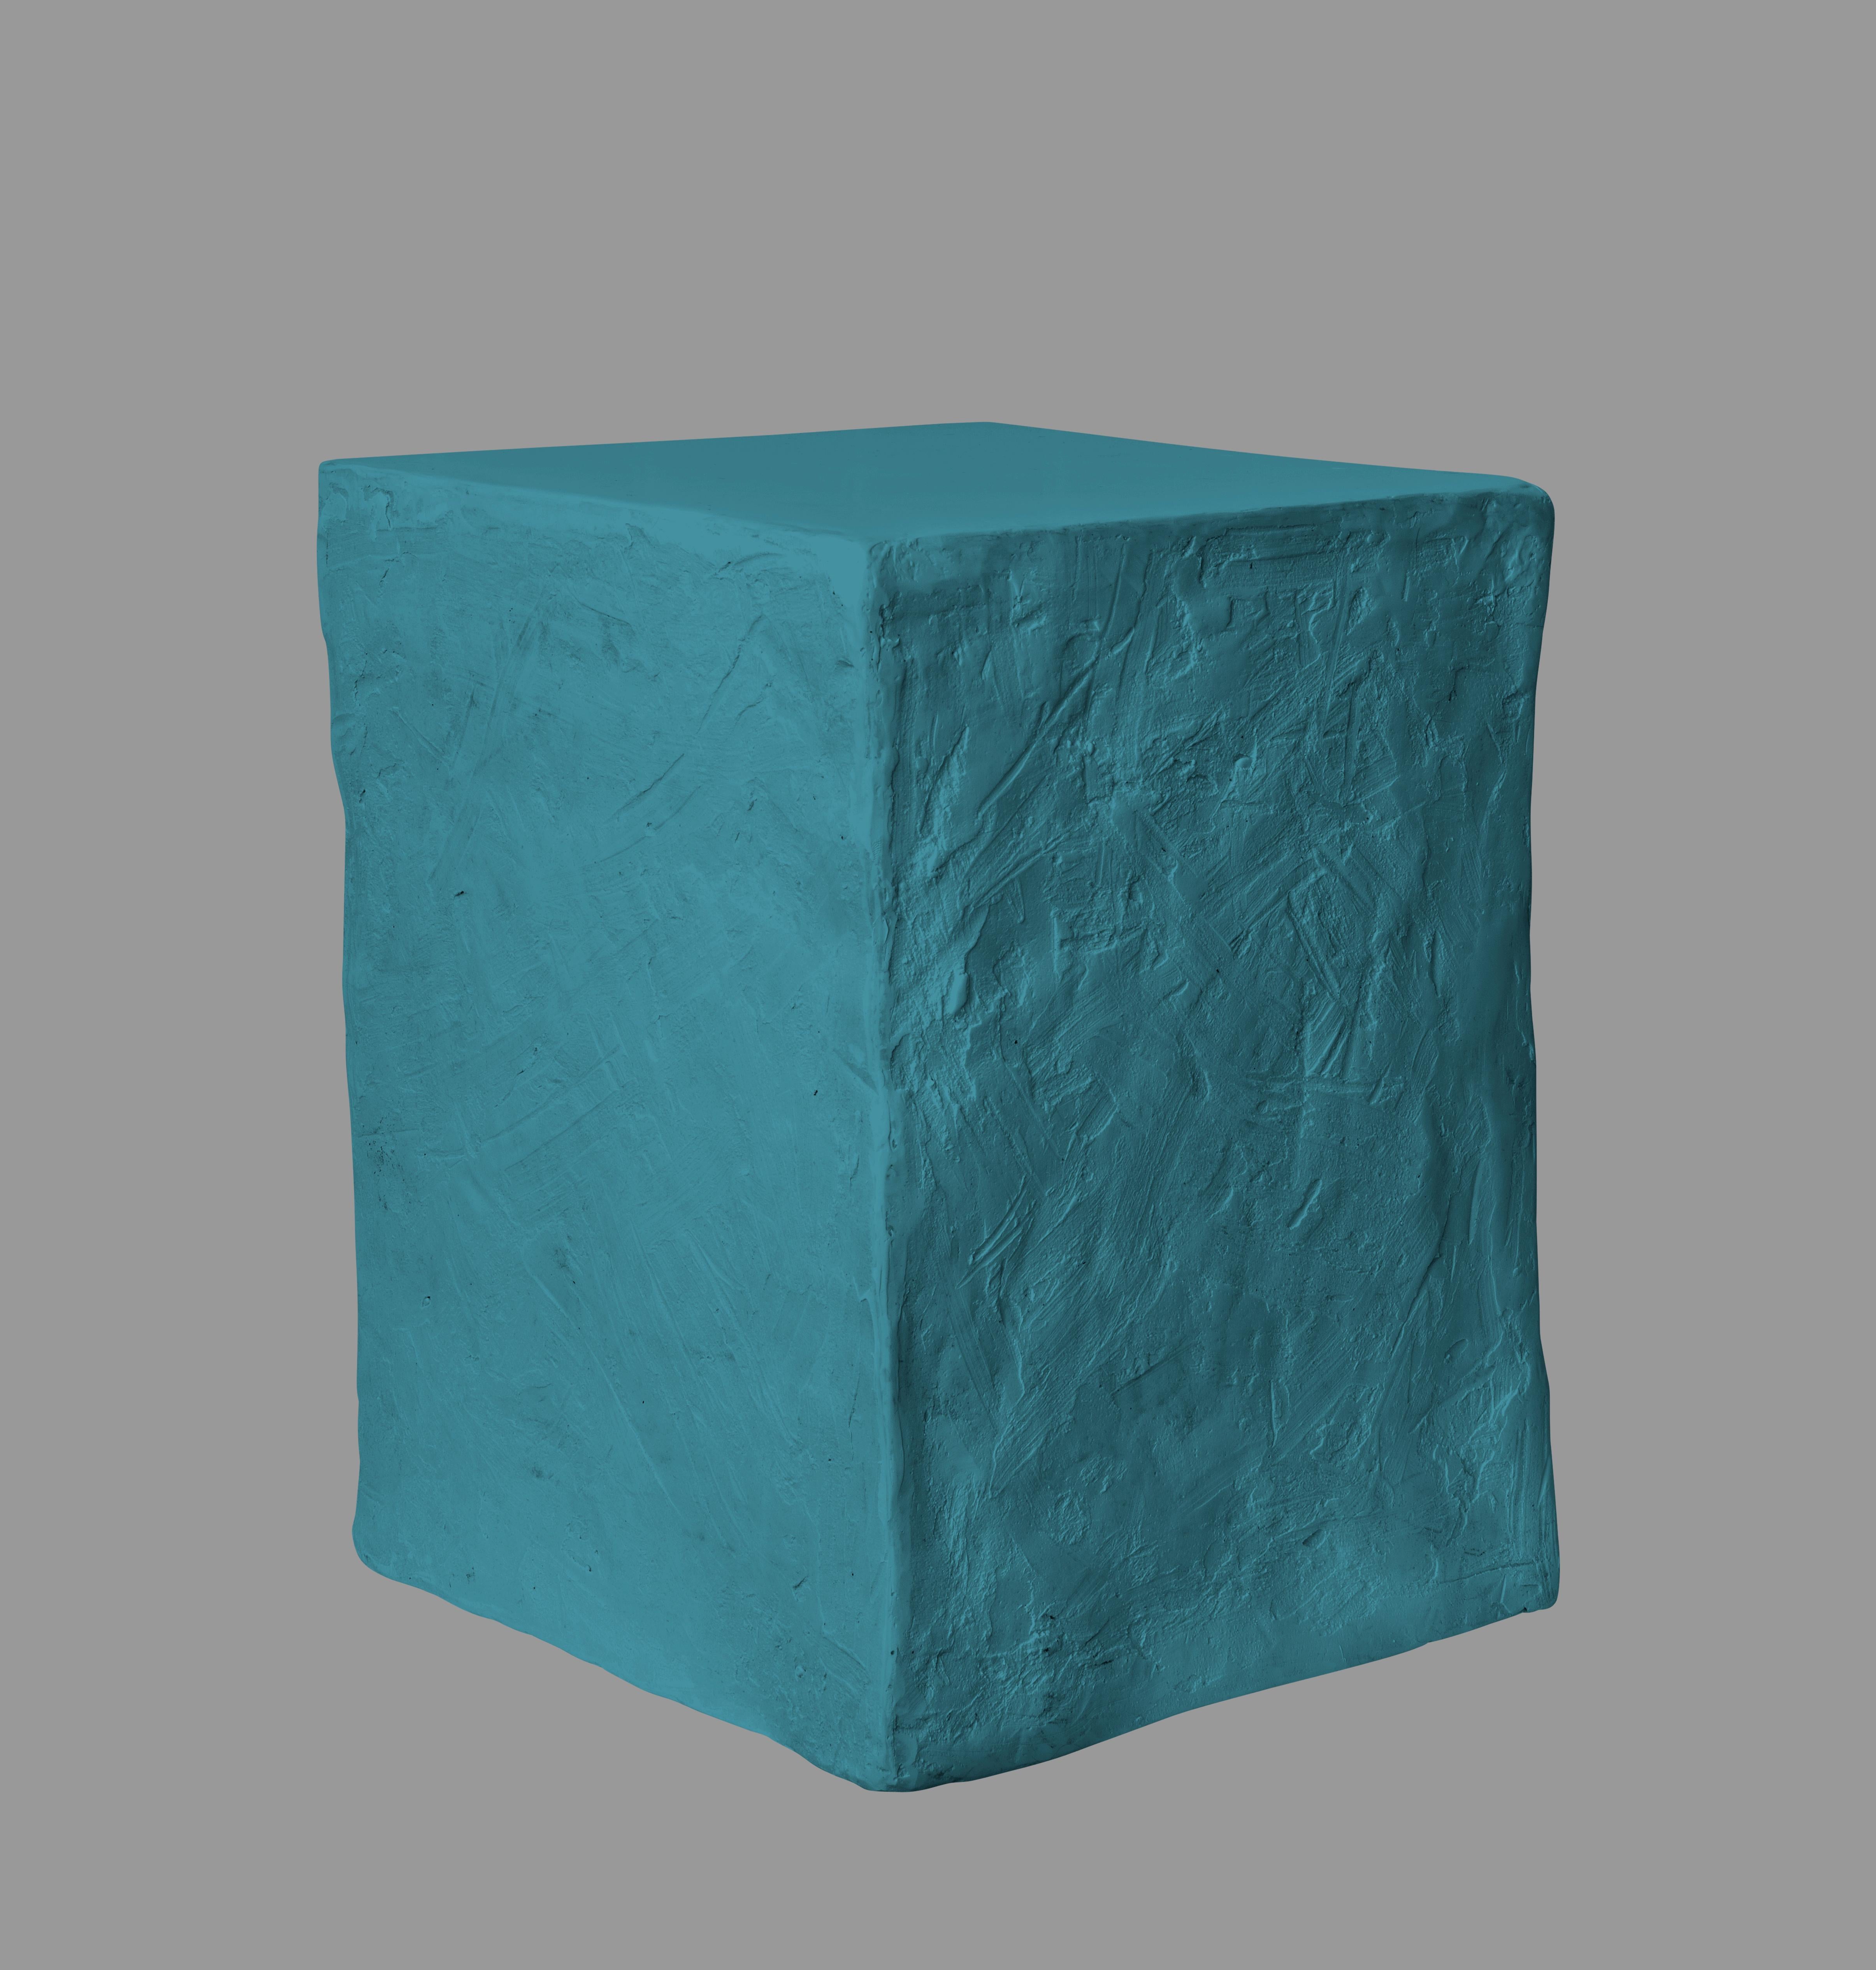 
Der Manhattan Cube ist ein täuschend einfacher Beistelltisch, der von der Künstlerin und Designerin Margit Wittig entworfen wurde und auch als skulpturale Sitzgelegenheit dienen kann.
Es handelt sich um die Nachbildung einer Form, die Margit liebt